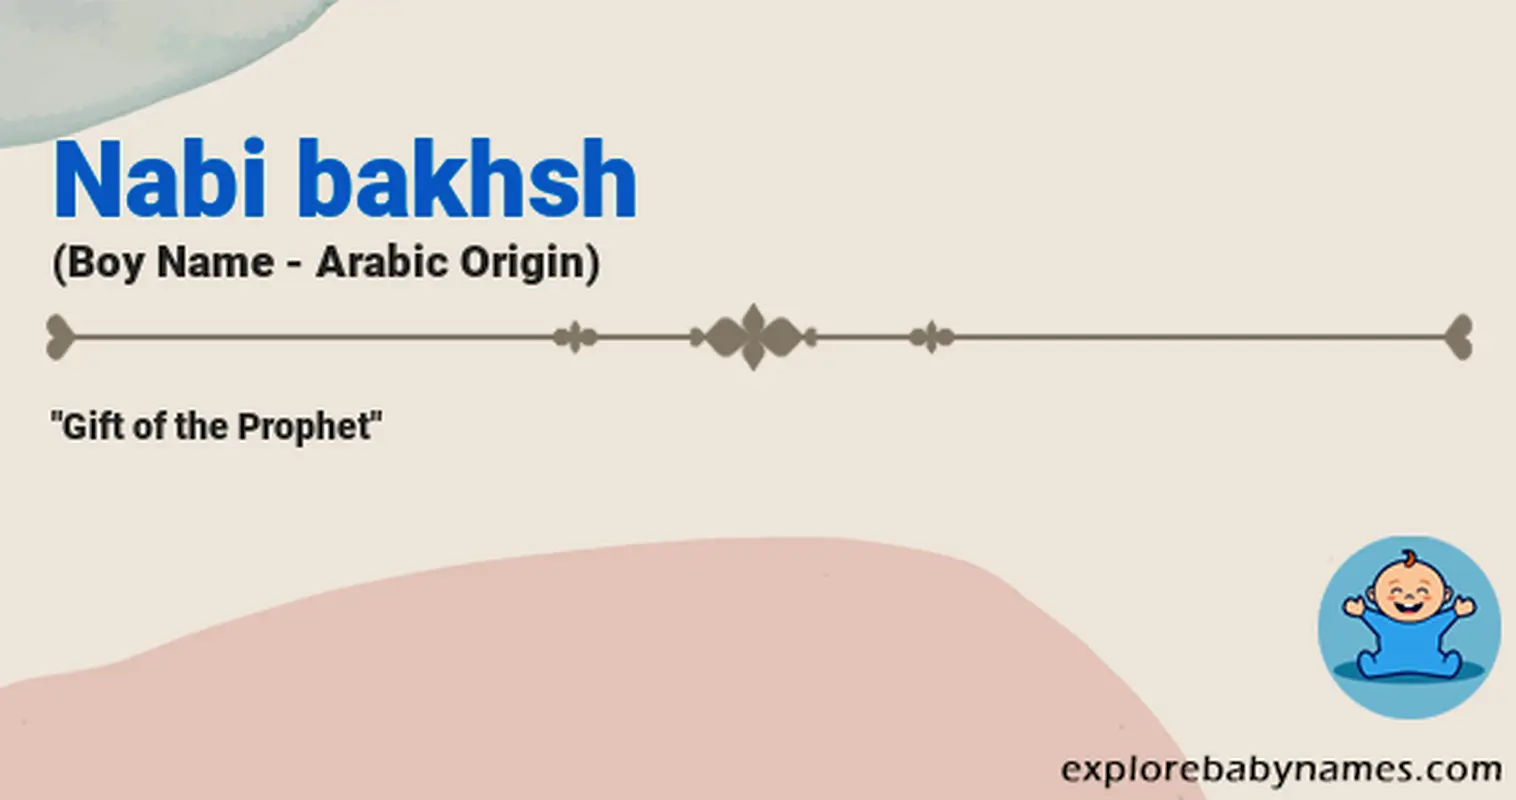 Meaning of Nabi bakhsh